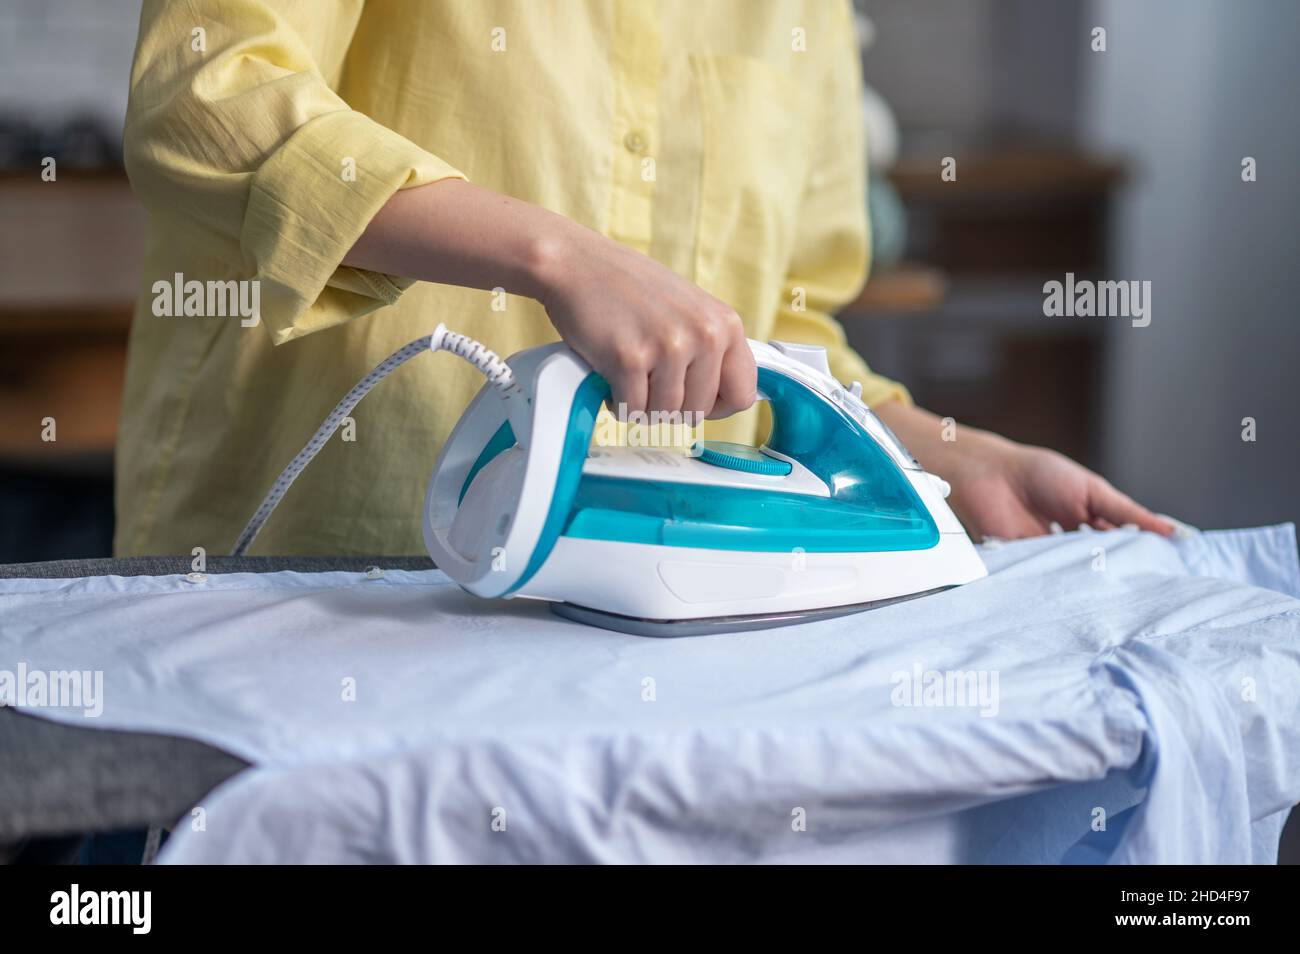 Les mains des femmes repassant des vêtements froissés sur la planche à repasser Banque D'Images